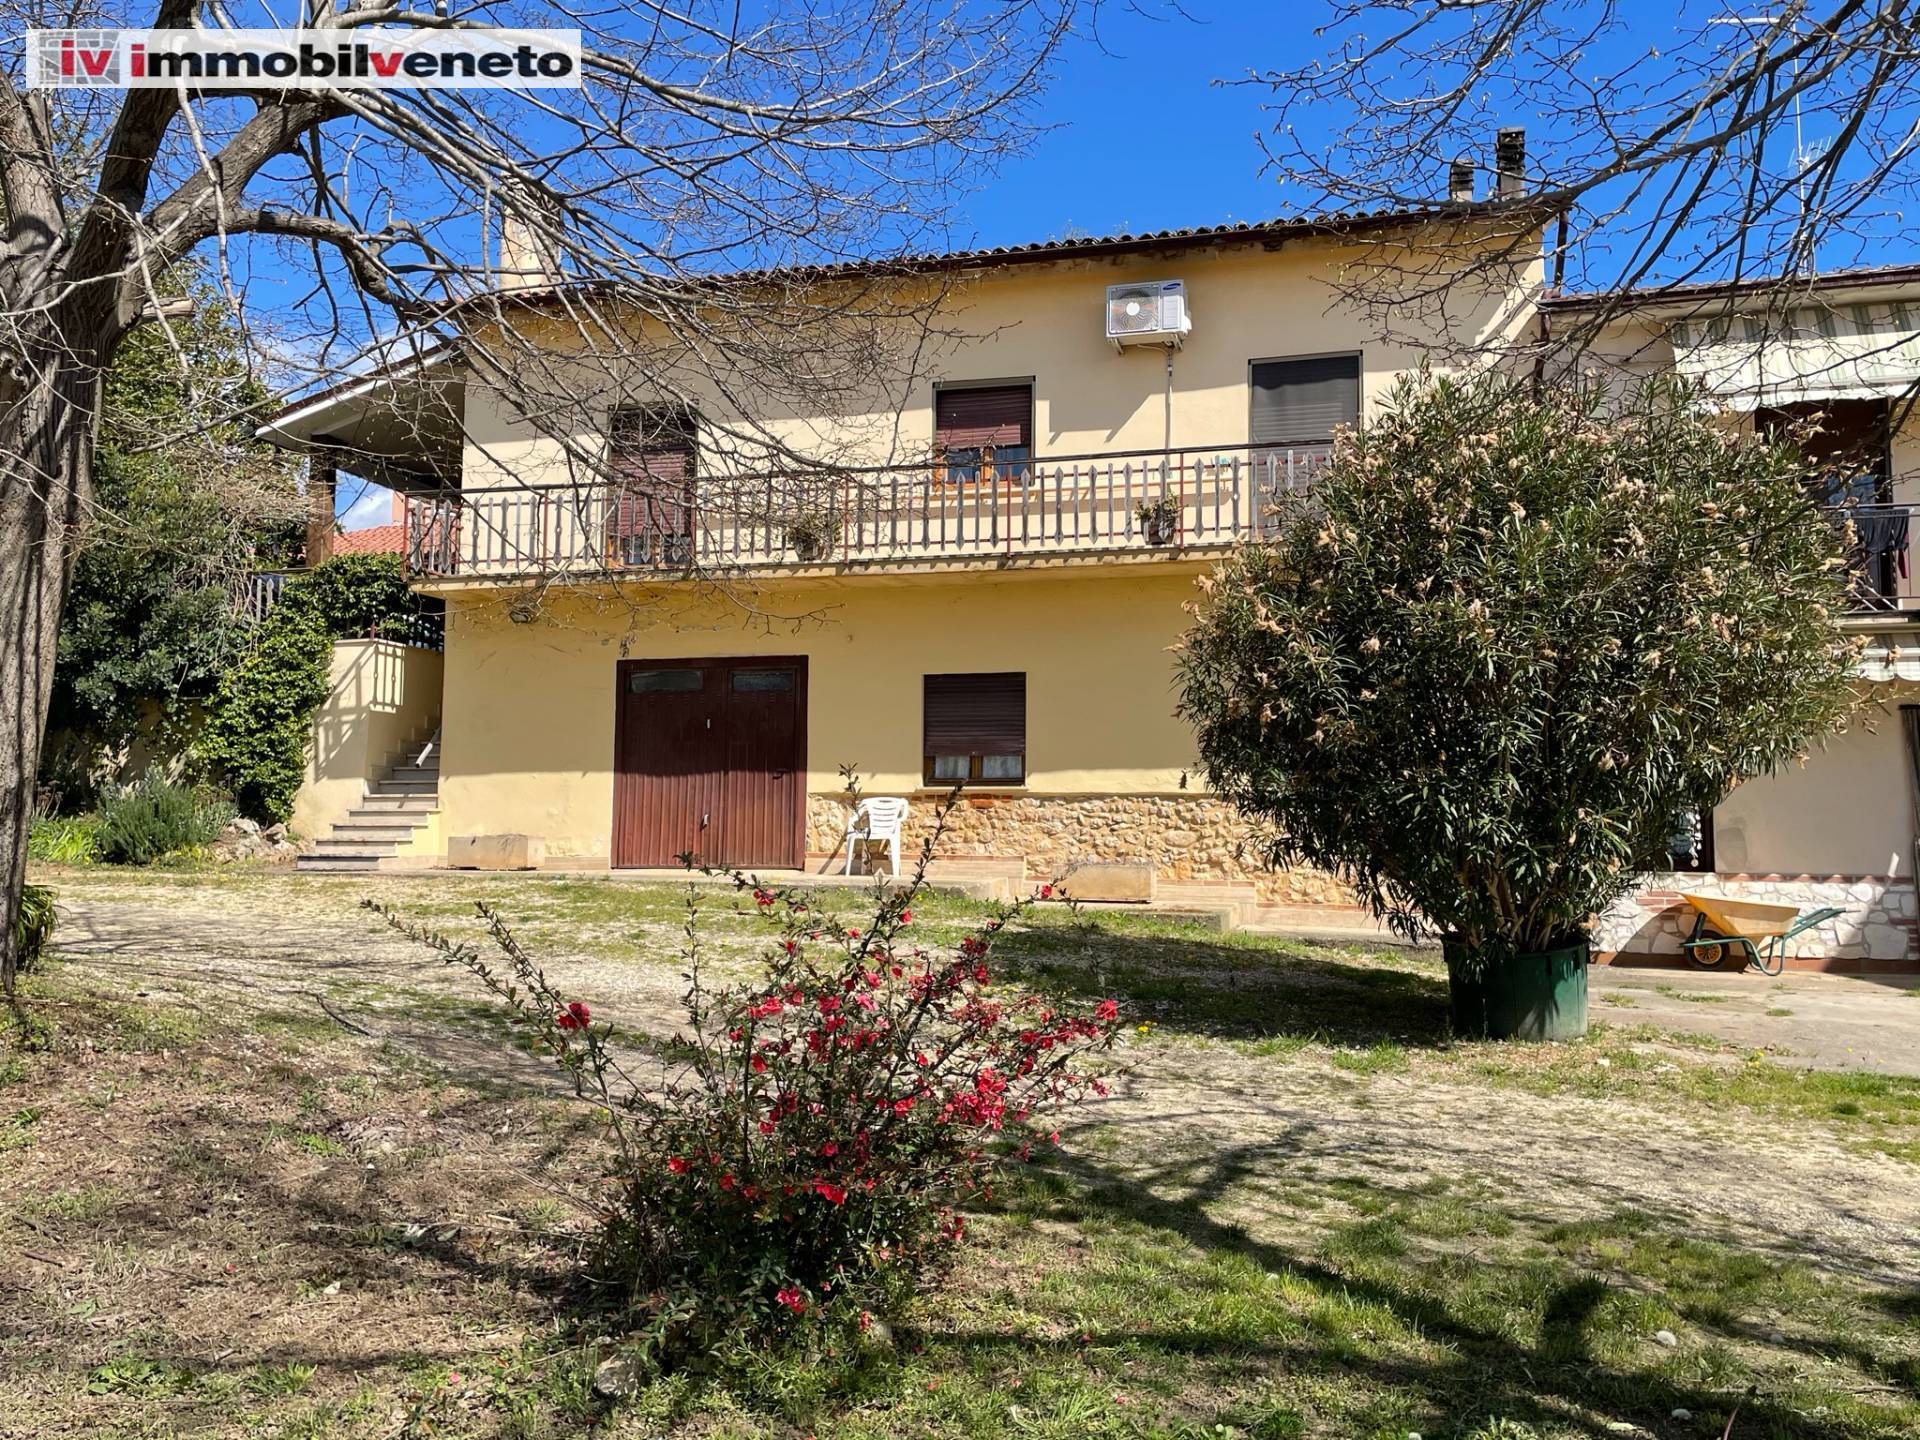 Villa a Schiera in vendita a Alonte, 8 locali, prezzo € 138.000 | PortaleAgenzieImmobiliari.it